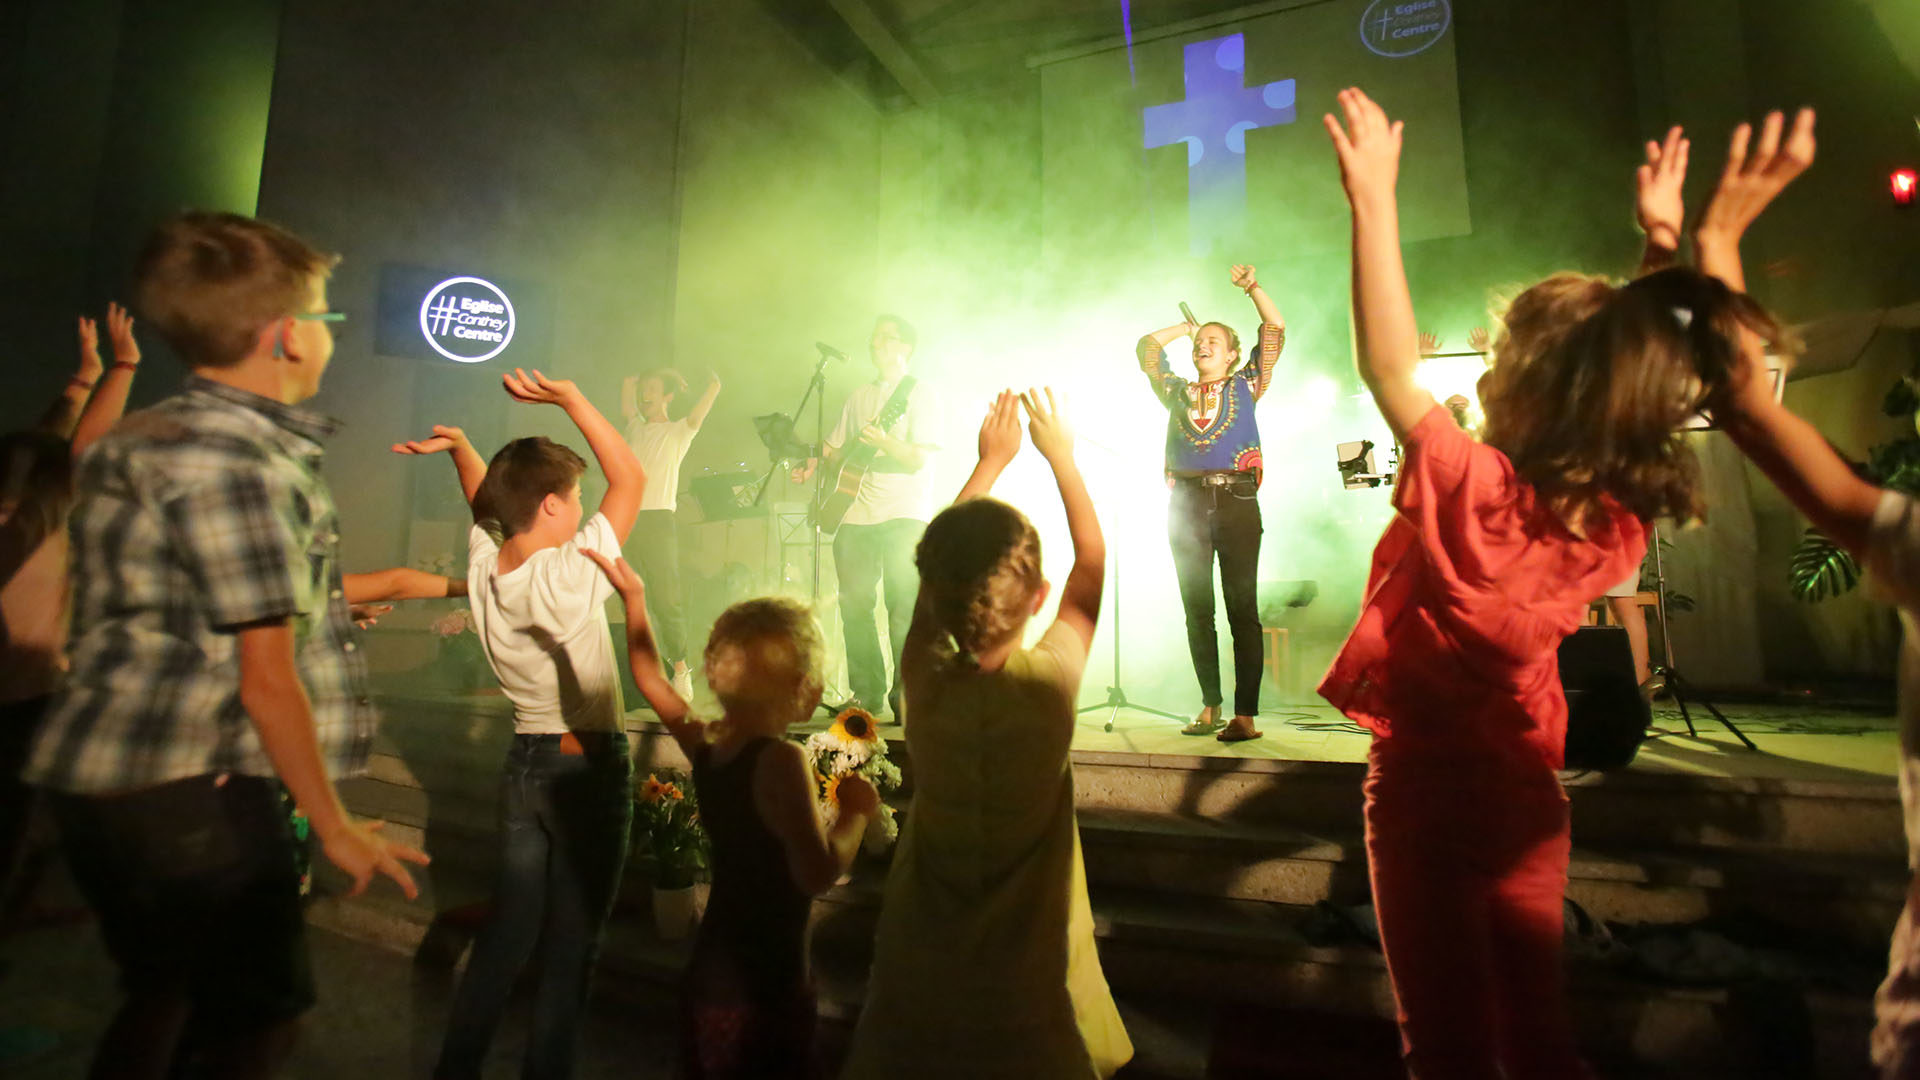 Le groupe “Raising Hope“ donne un concert de pop louange à l'église de Conthey. | © B. Hallet